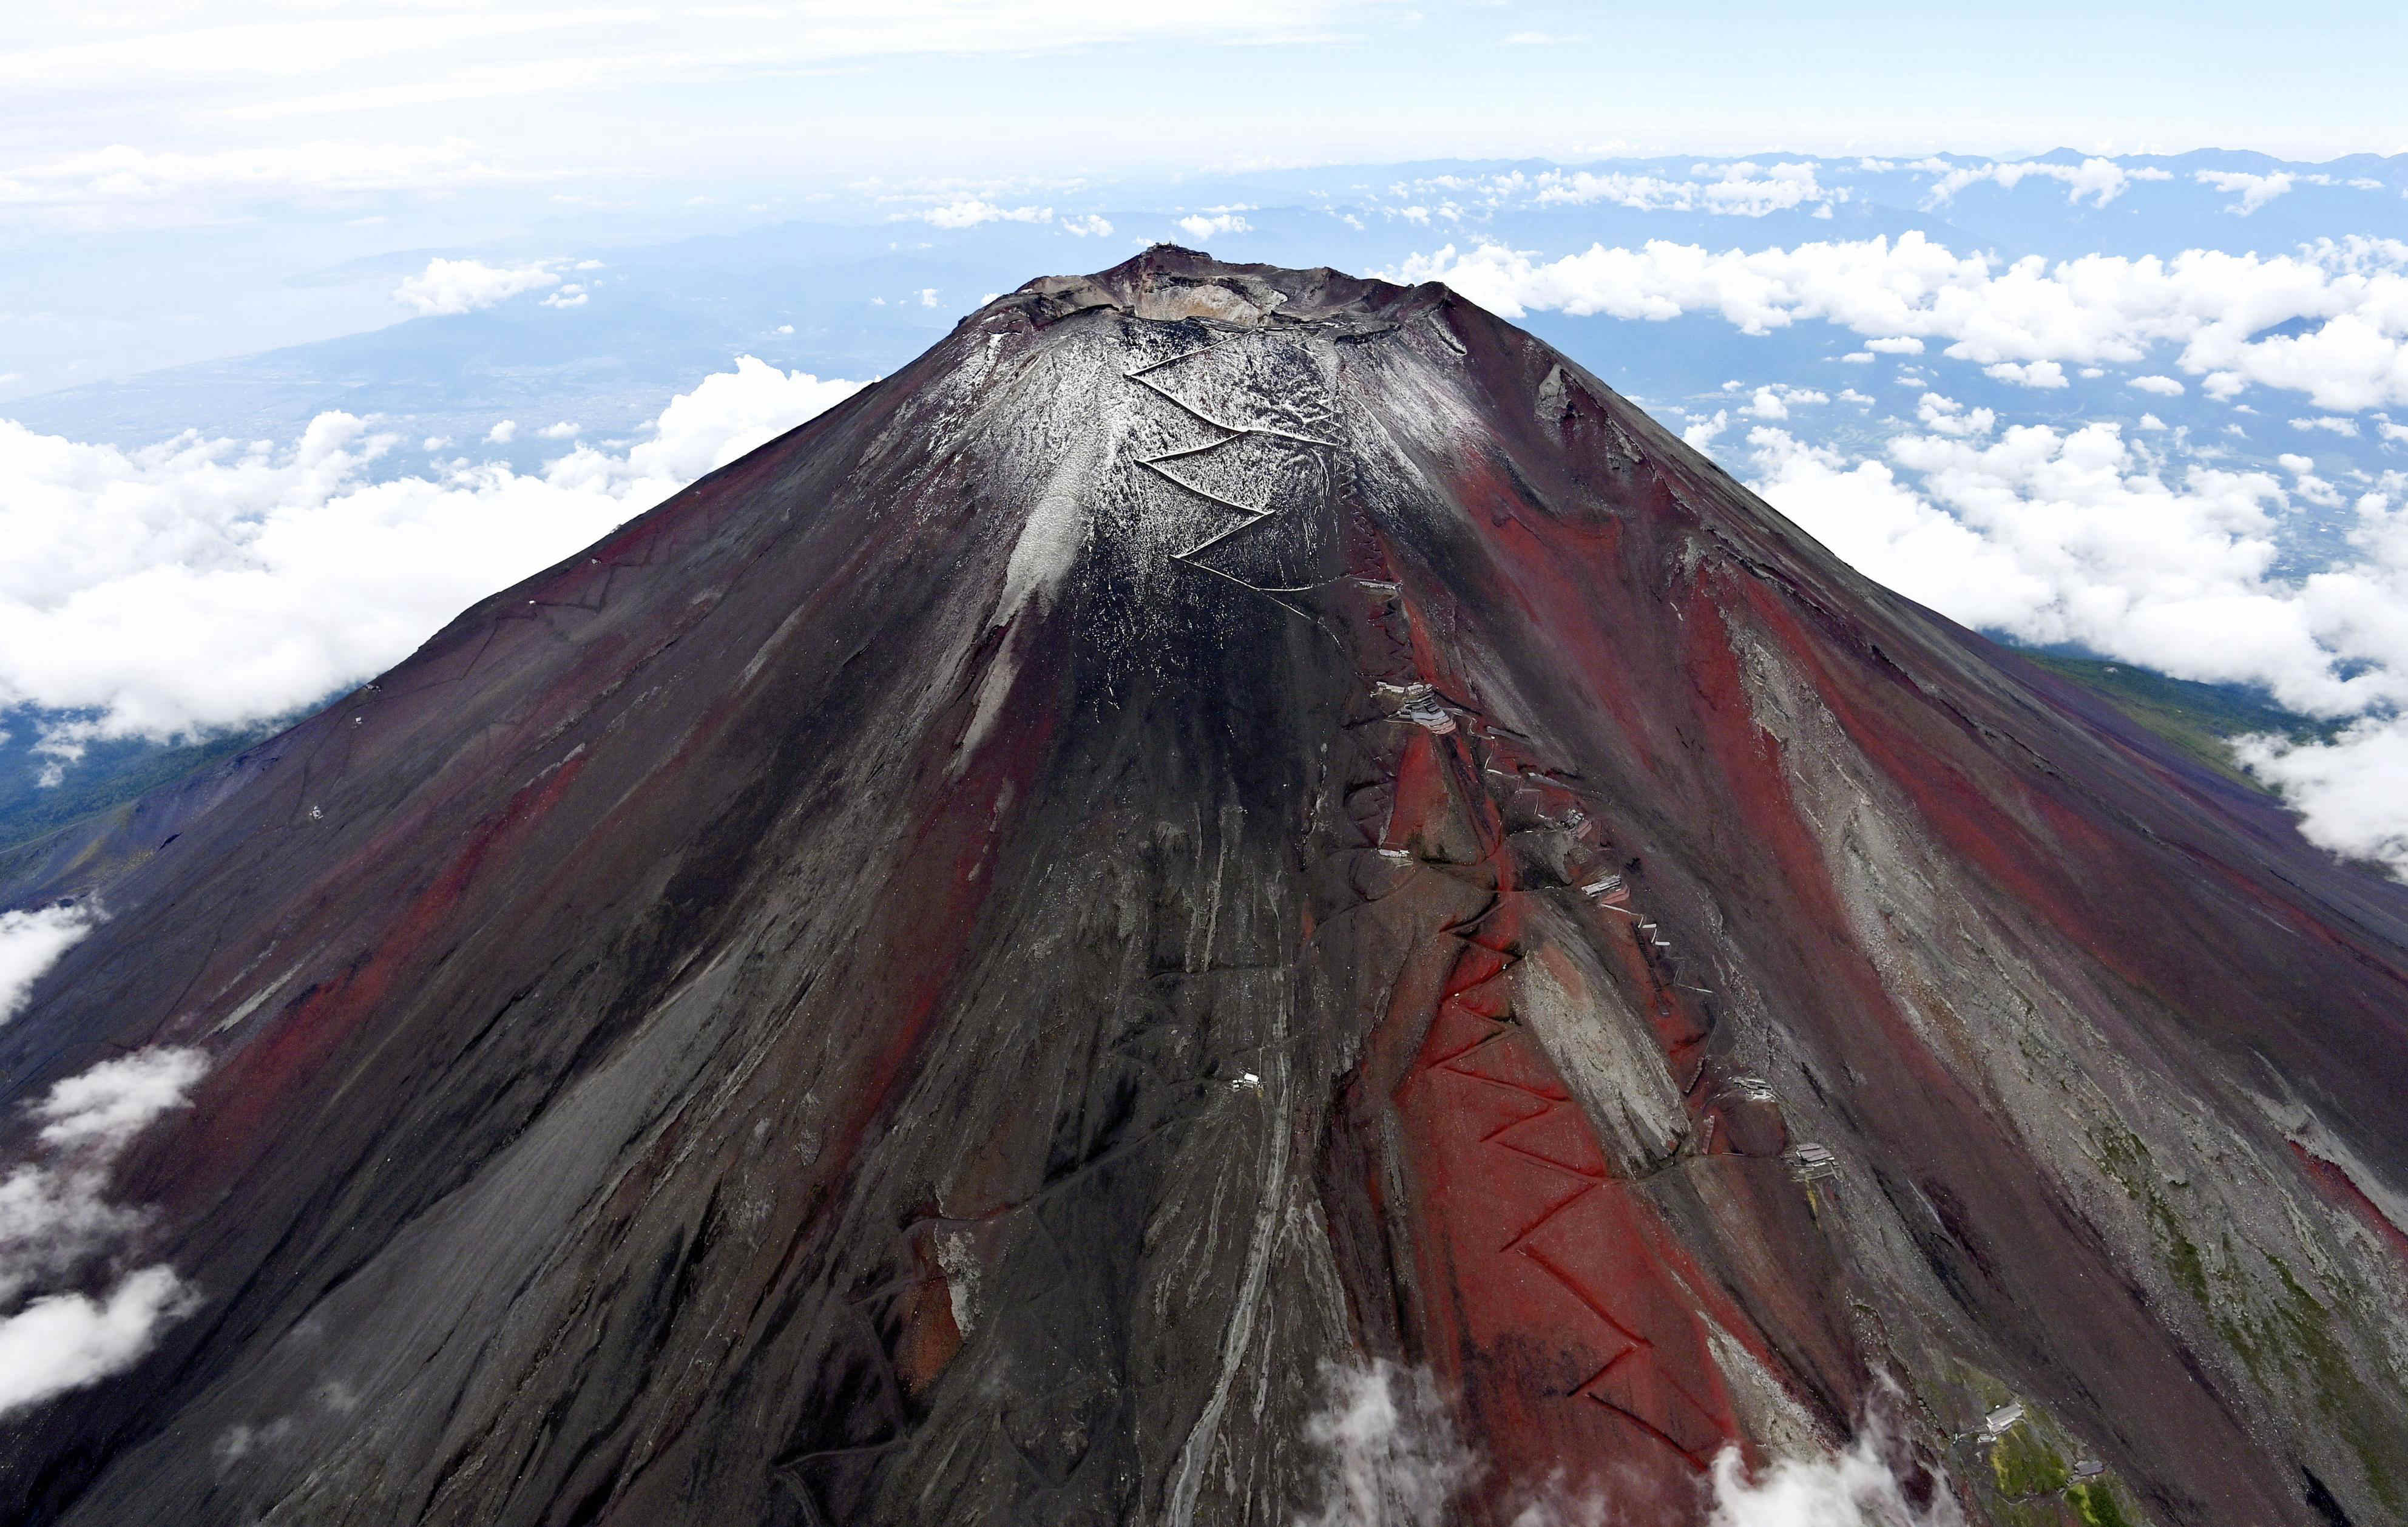 日本富士山喷火口增加近6倍 专家称随时都有喷发可能